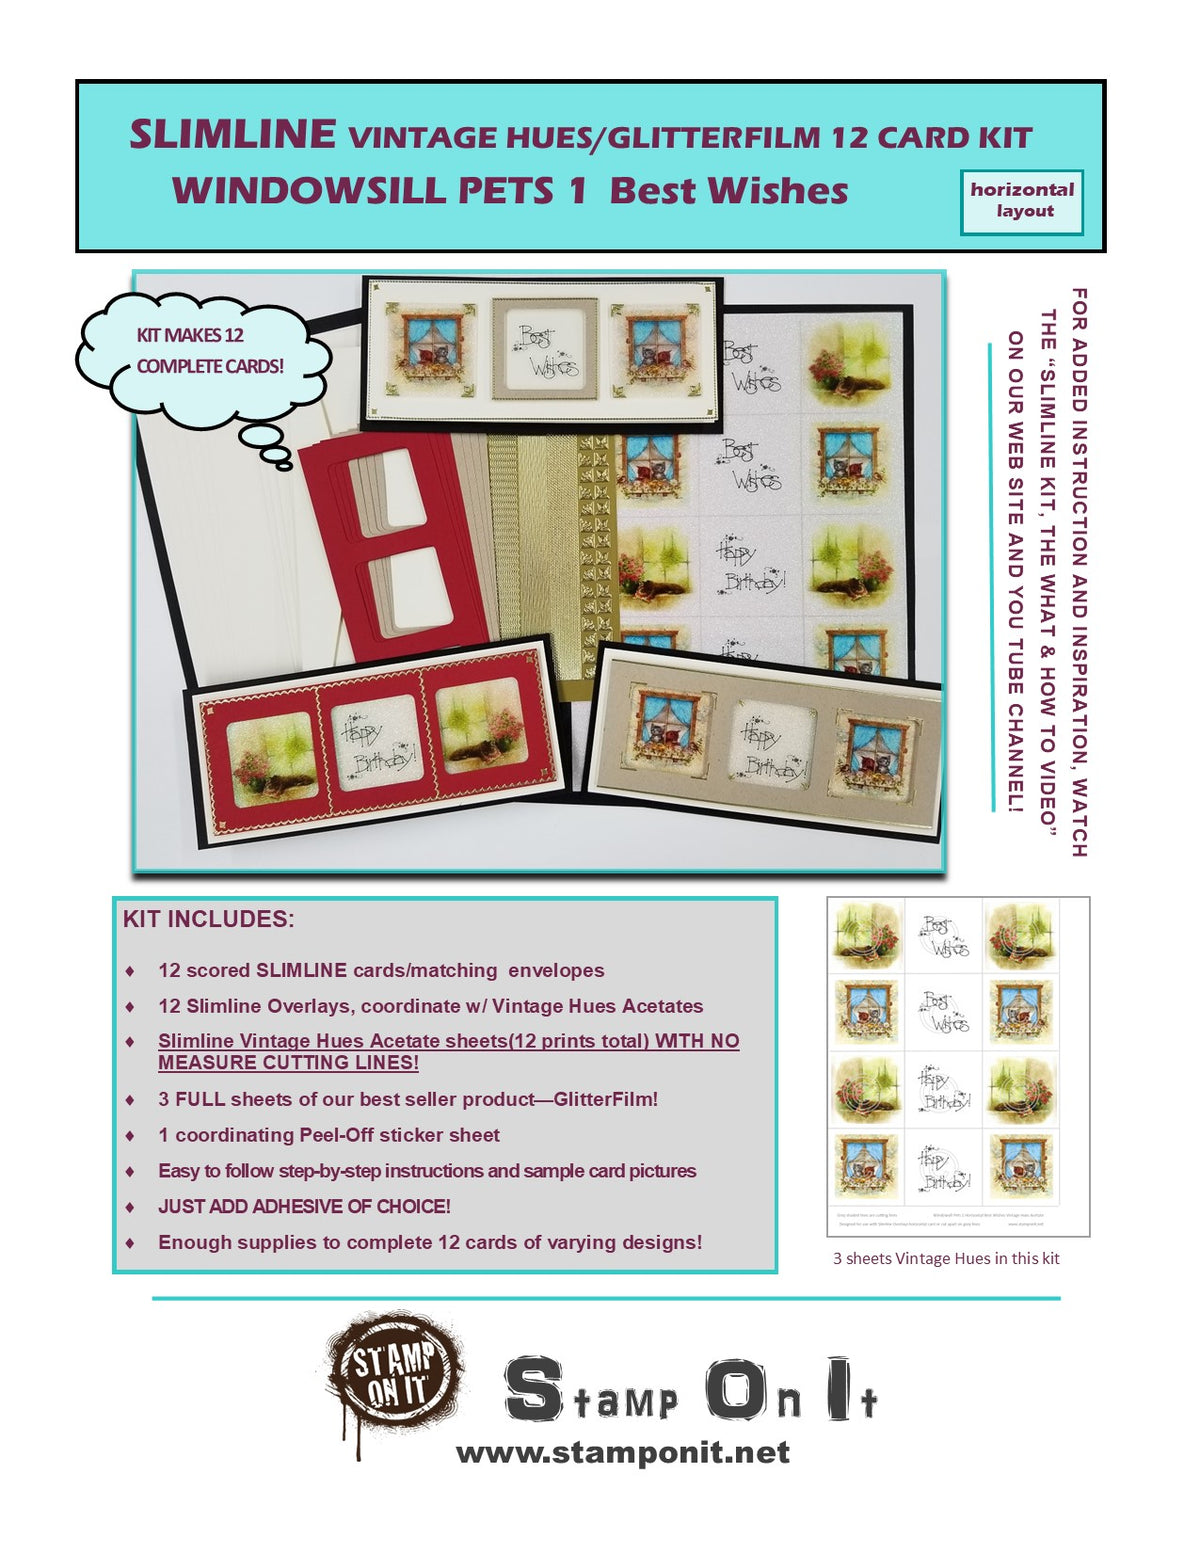 GlitterFilm & Vintage Hues 12 Slimline Card Kit Windowsill Pets 1 Best Wishes